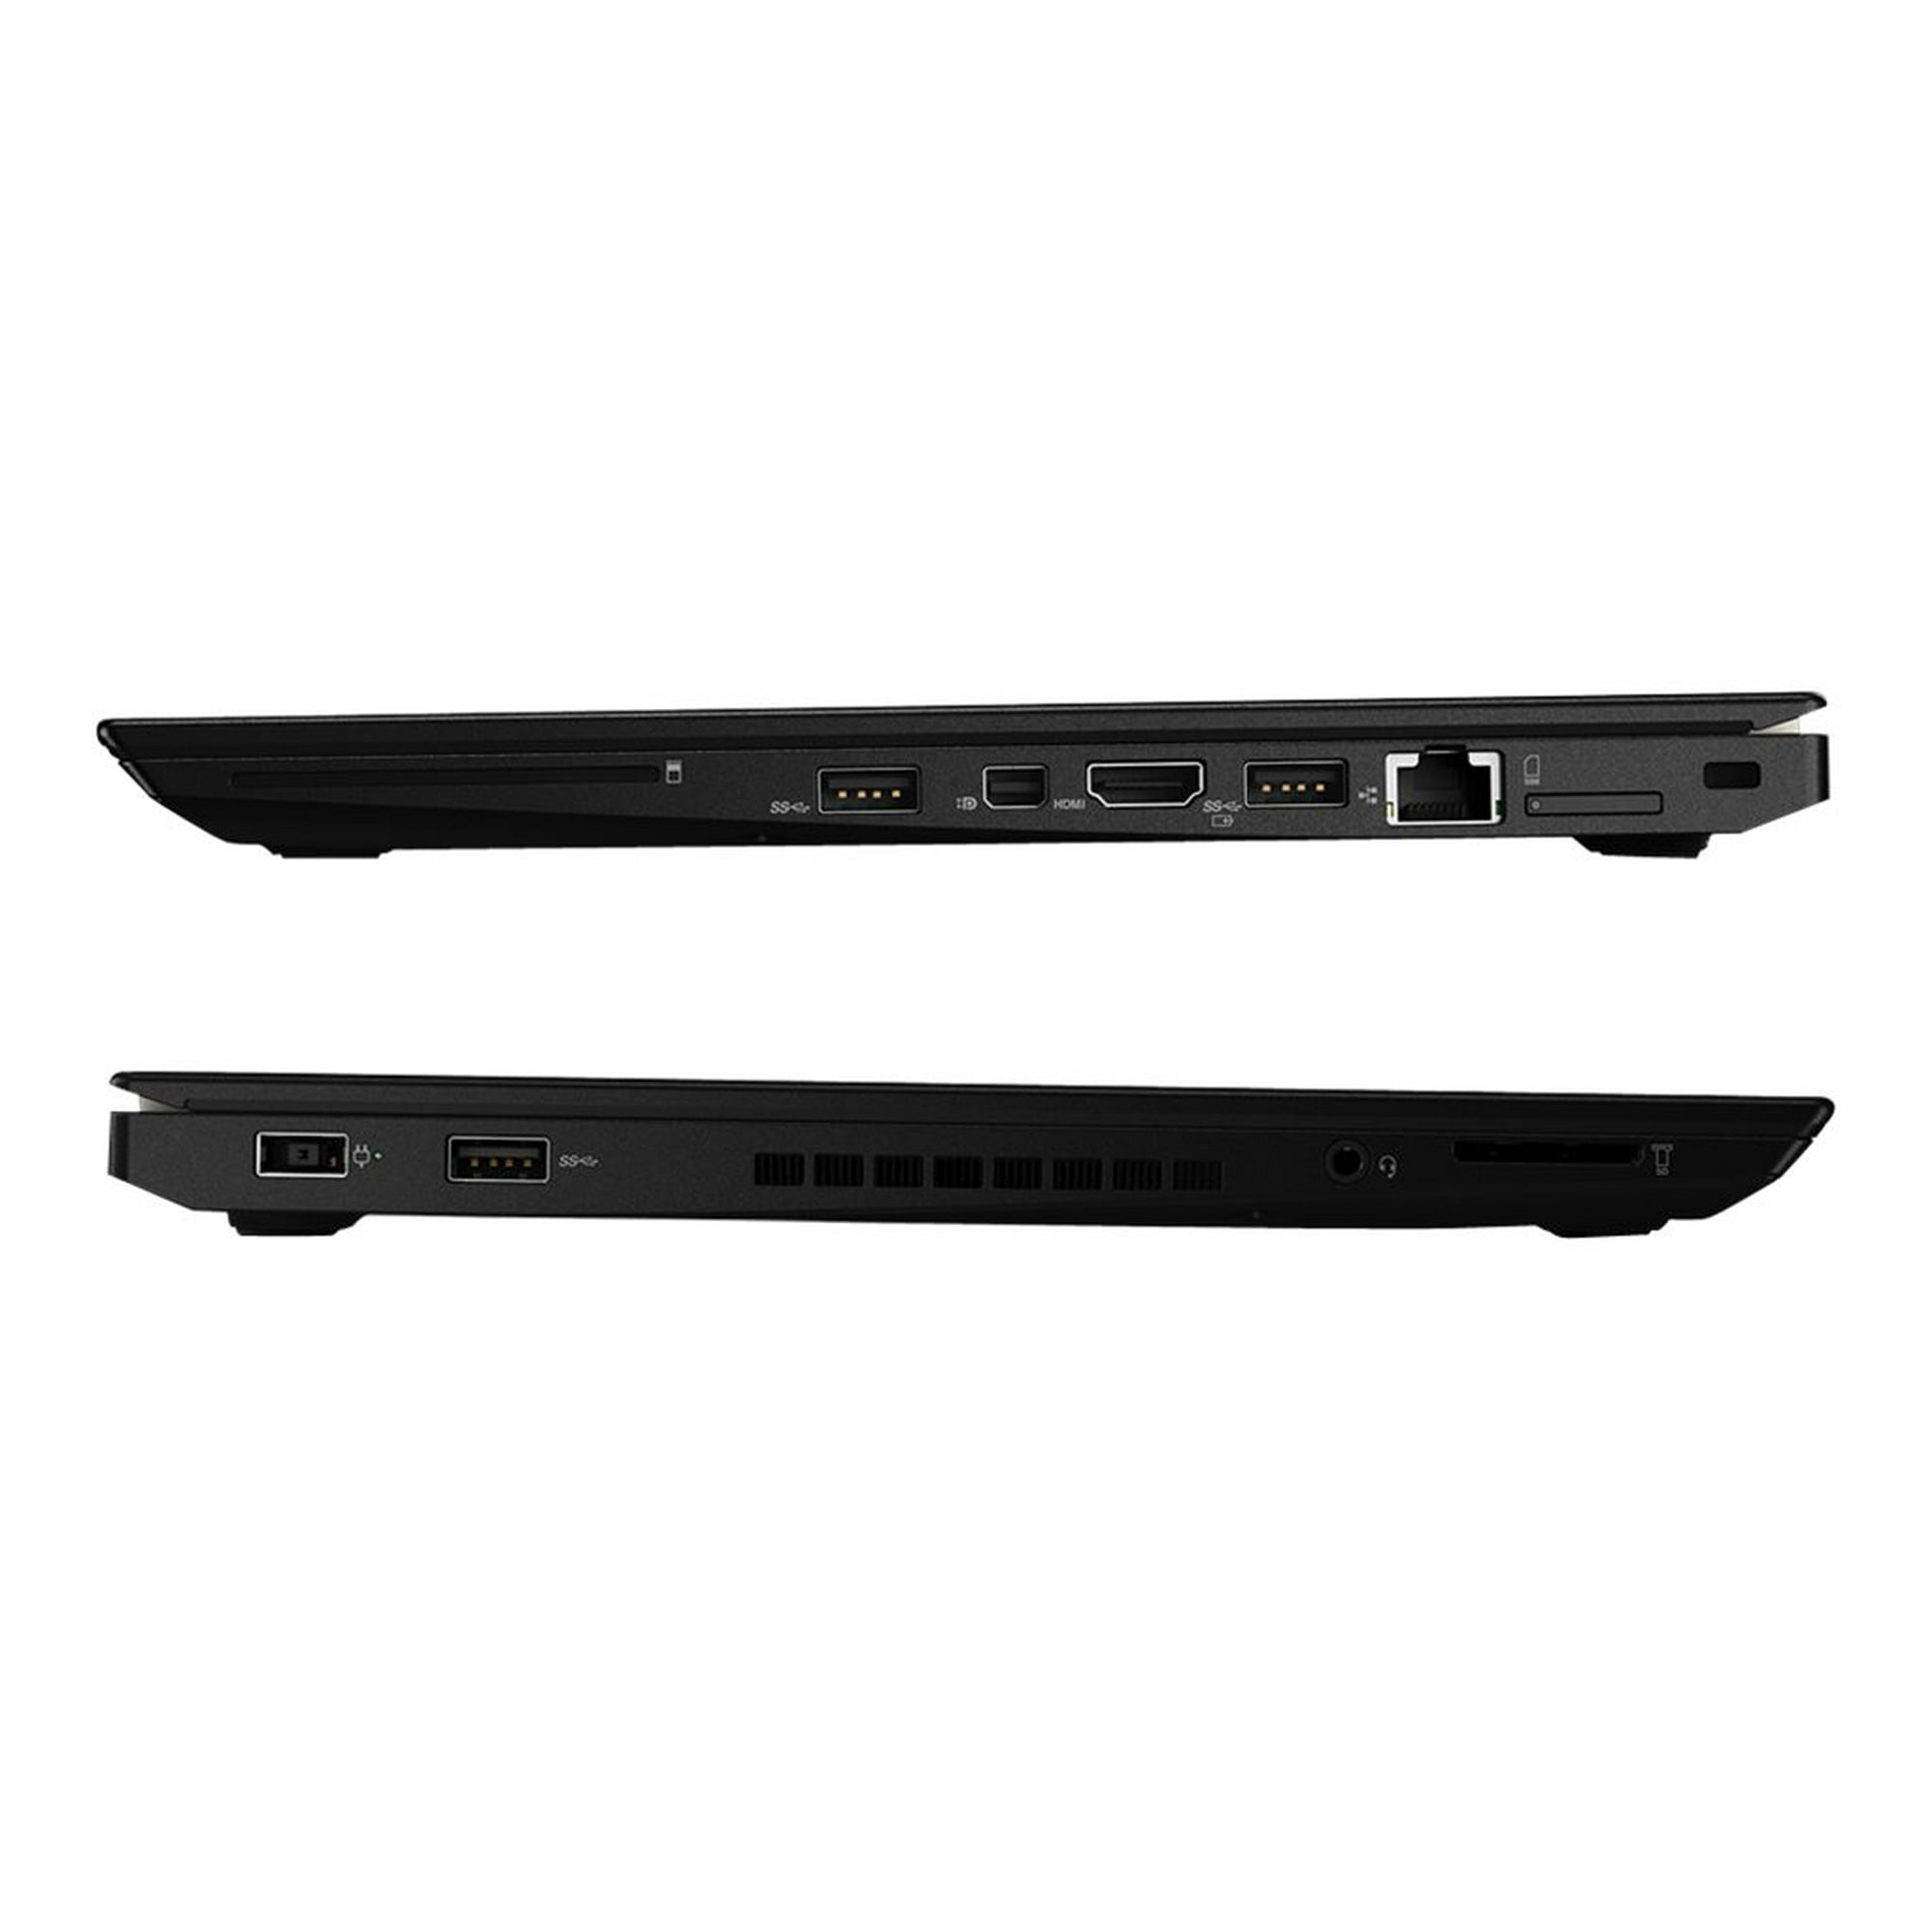 Lenovo ThinkPad T460s 20F9 - Ultrabook - Intel Core i7 6600U / 2.6 GHz -  vPro - Win 10 Pro 64-bit - GF 930M - 8 GB RAM - 256 GB SSD TCG Opal 